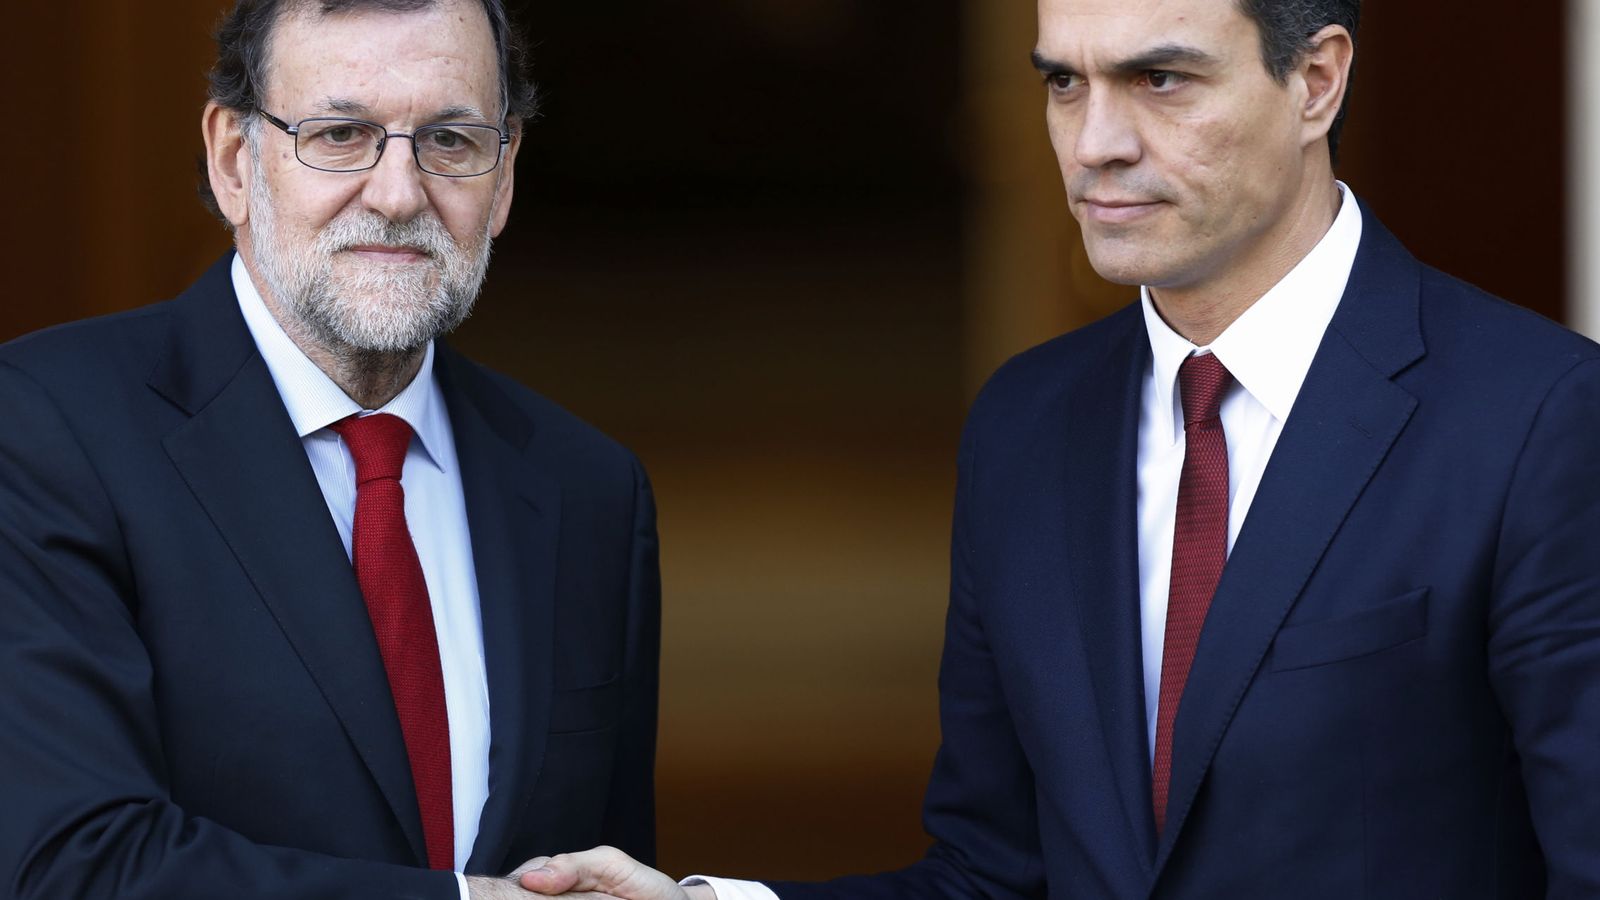 Foto: Rajoy y Sánchez se saludan antes de su reunión en Moncloa el 23 de diciembre. (EFE)